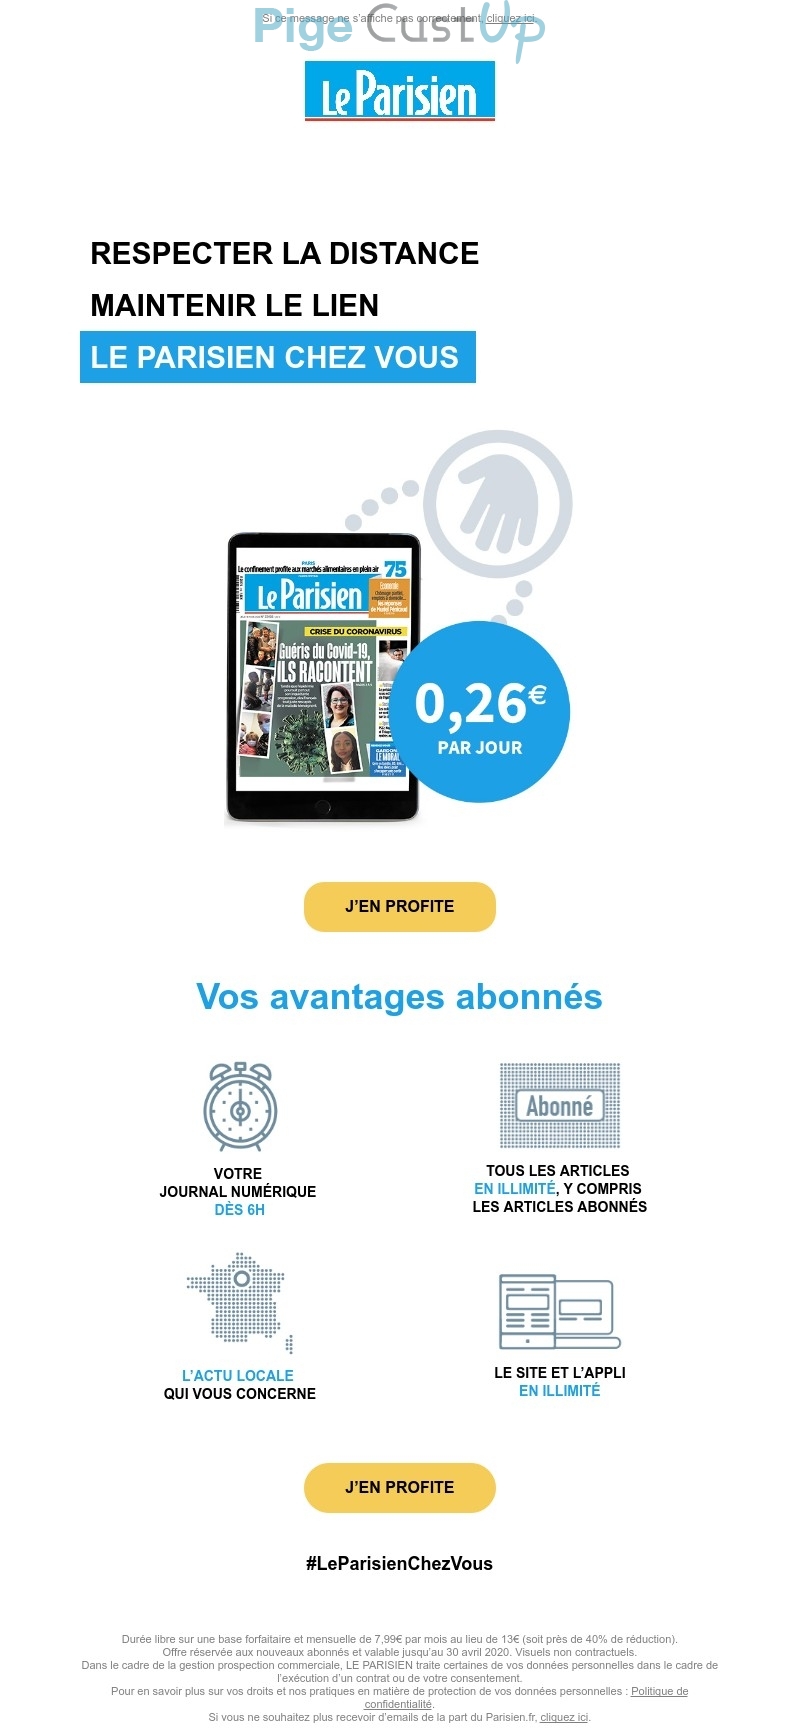 Exemple de Type de media  e-mailing - Le Parisien - Marketing Acquisition - Acquisition abonnements